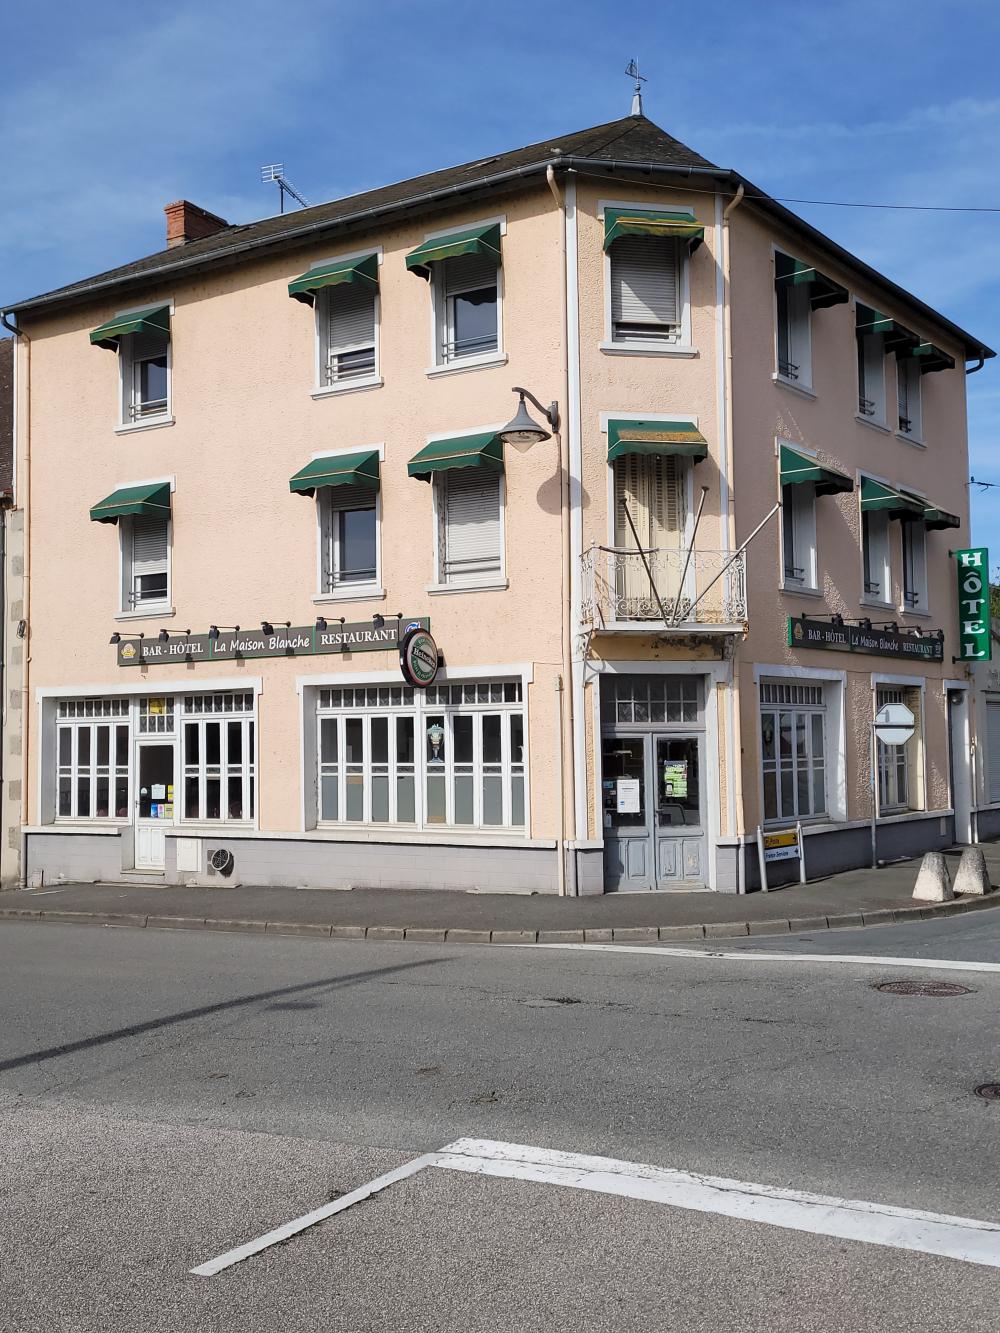 hôtel restaurant à vendre Gouzon, Creuse ( Nouvelle-Aquitaine) photo 1